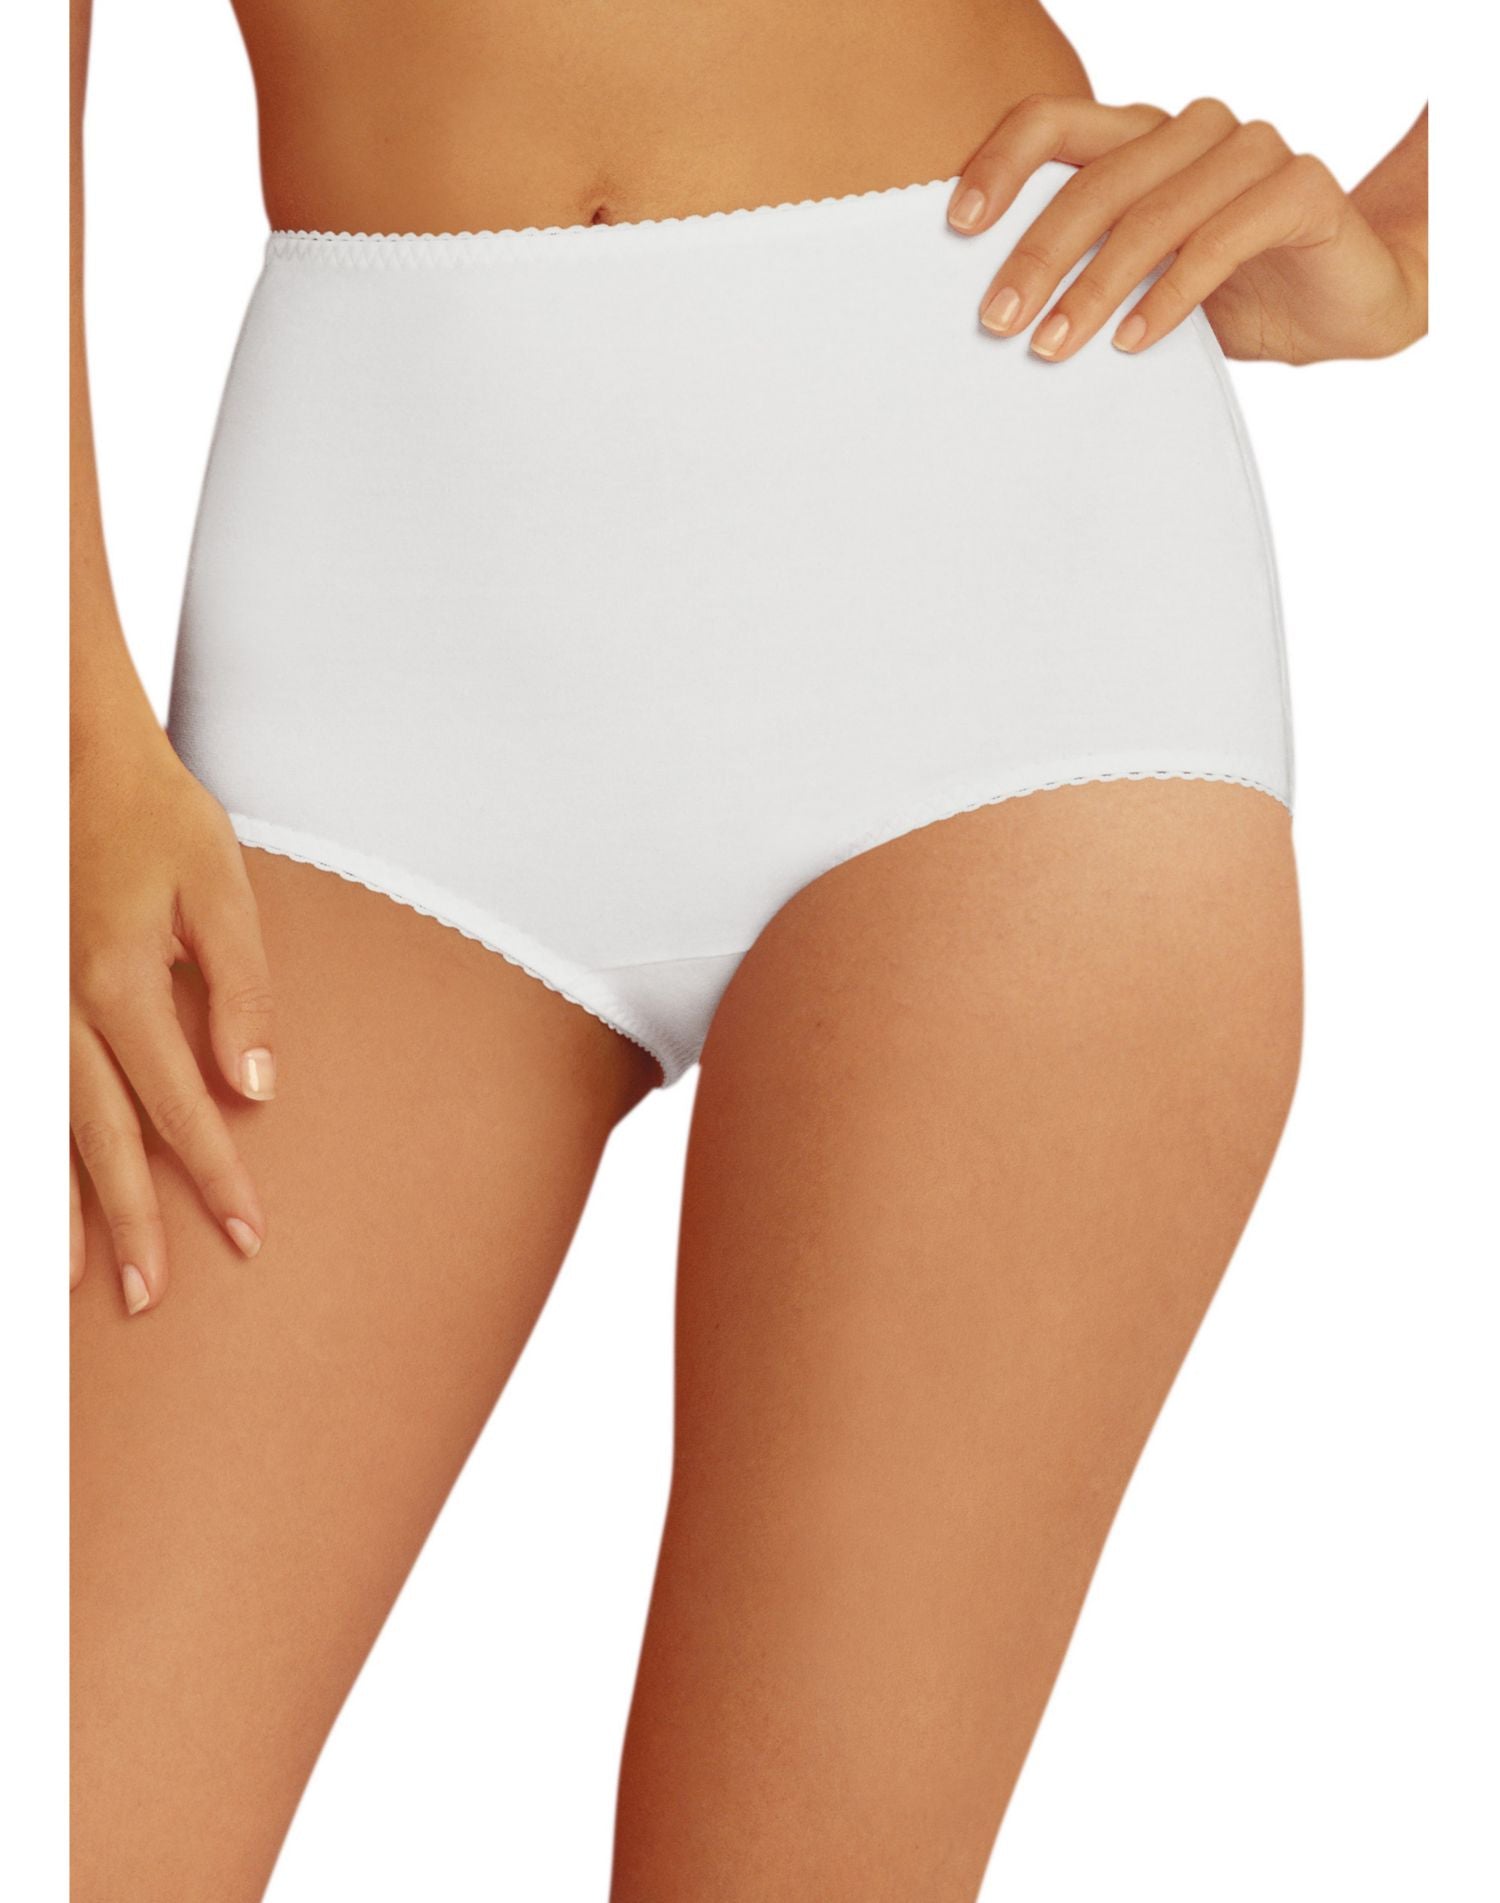 Hanes No-Show Women's Smoothing Brief Underwear, 2-Pack Light